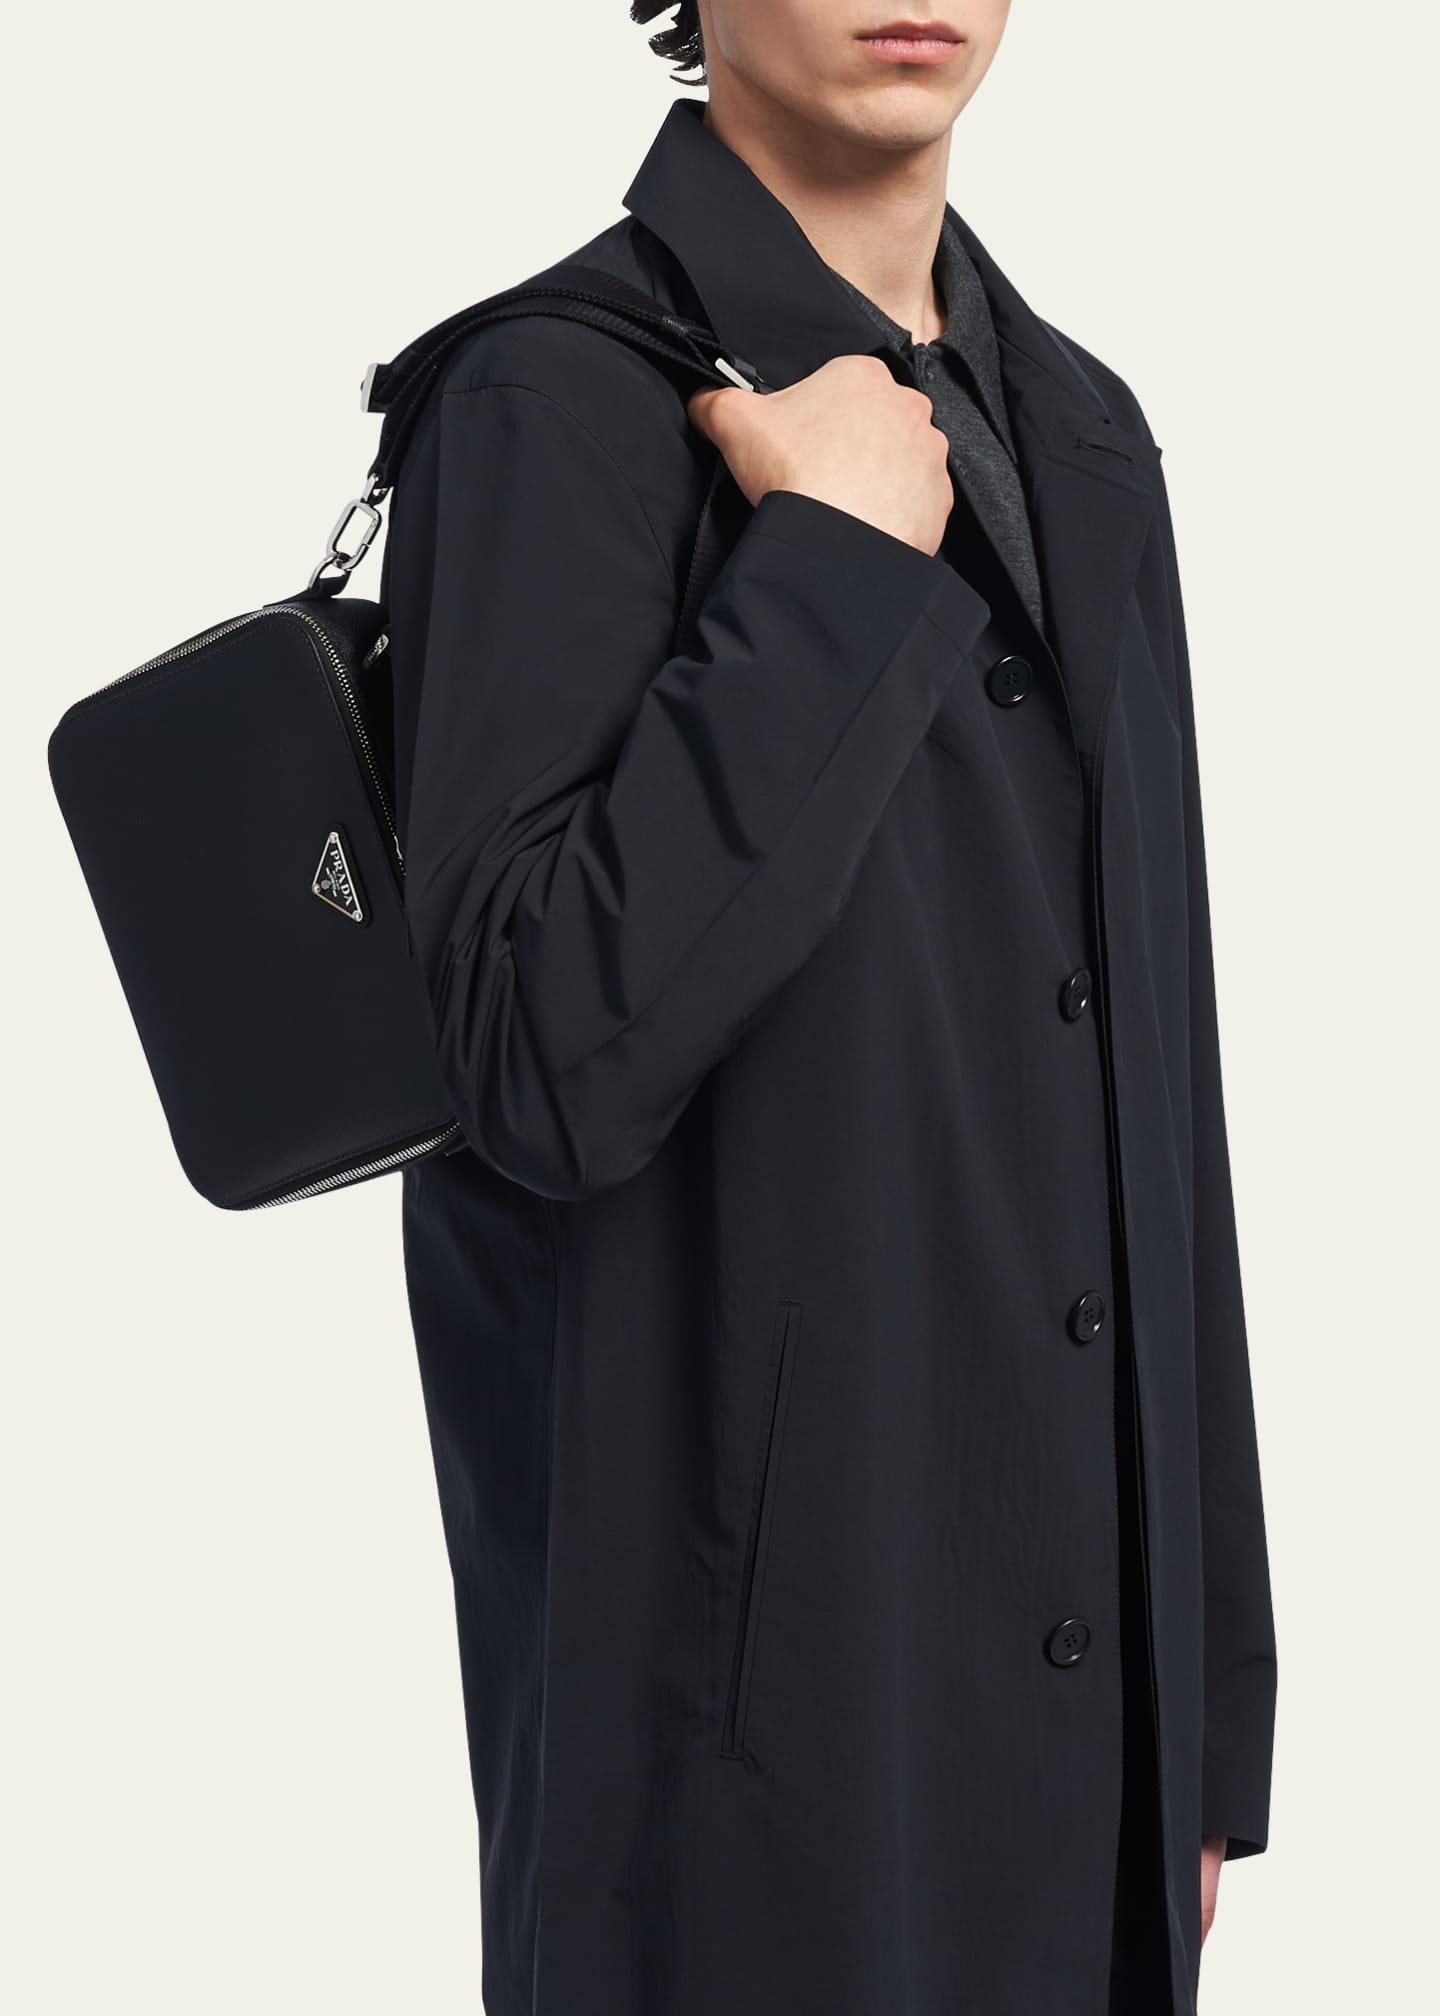 Prada Saffiano Leather Mini Pouch in Black for Men